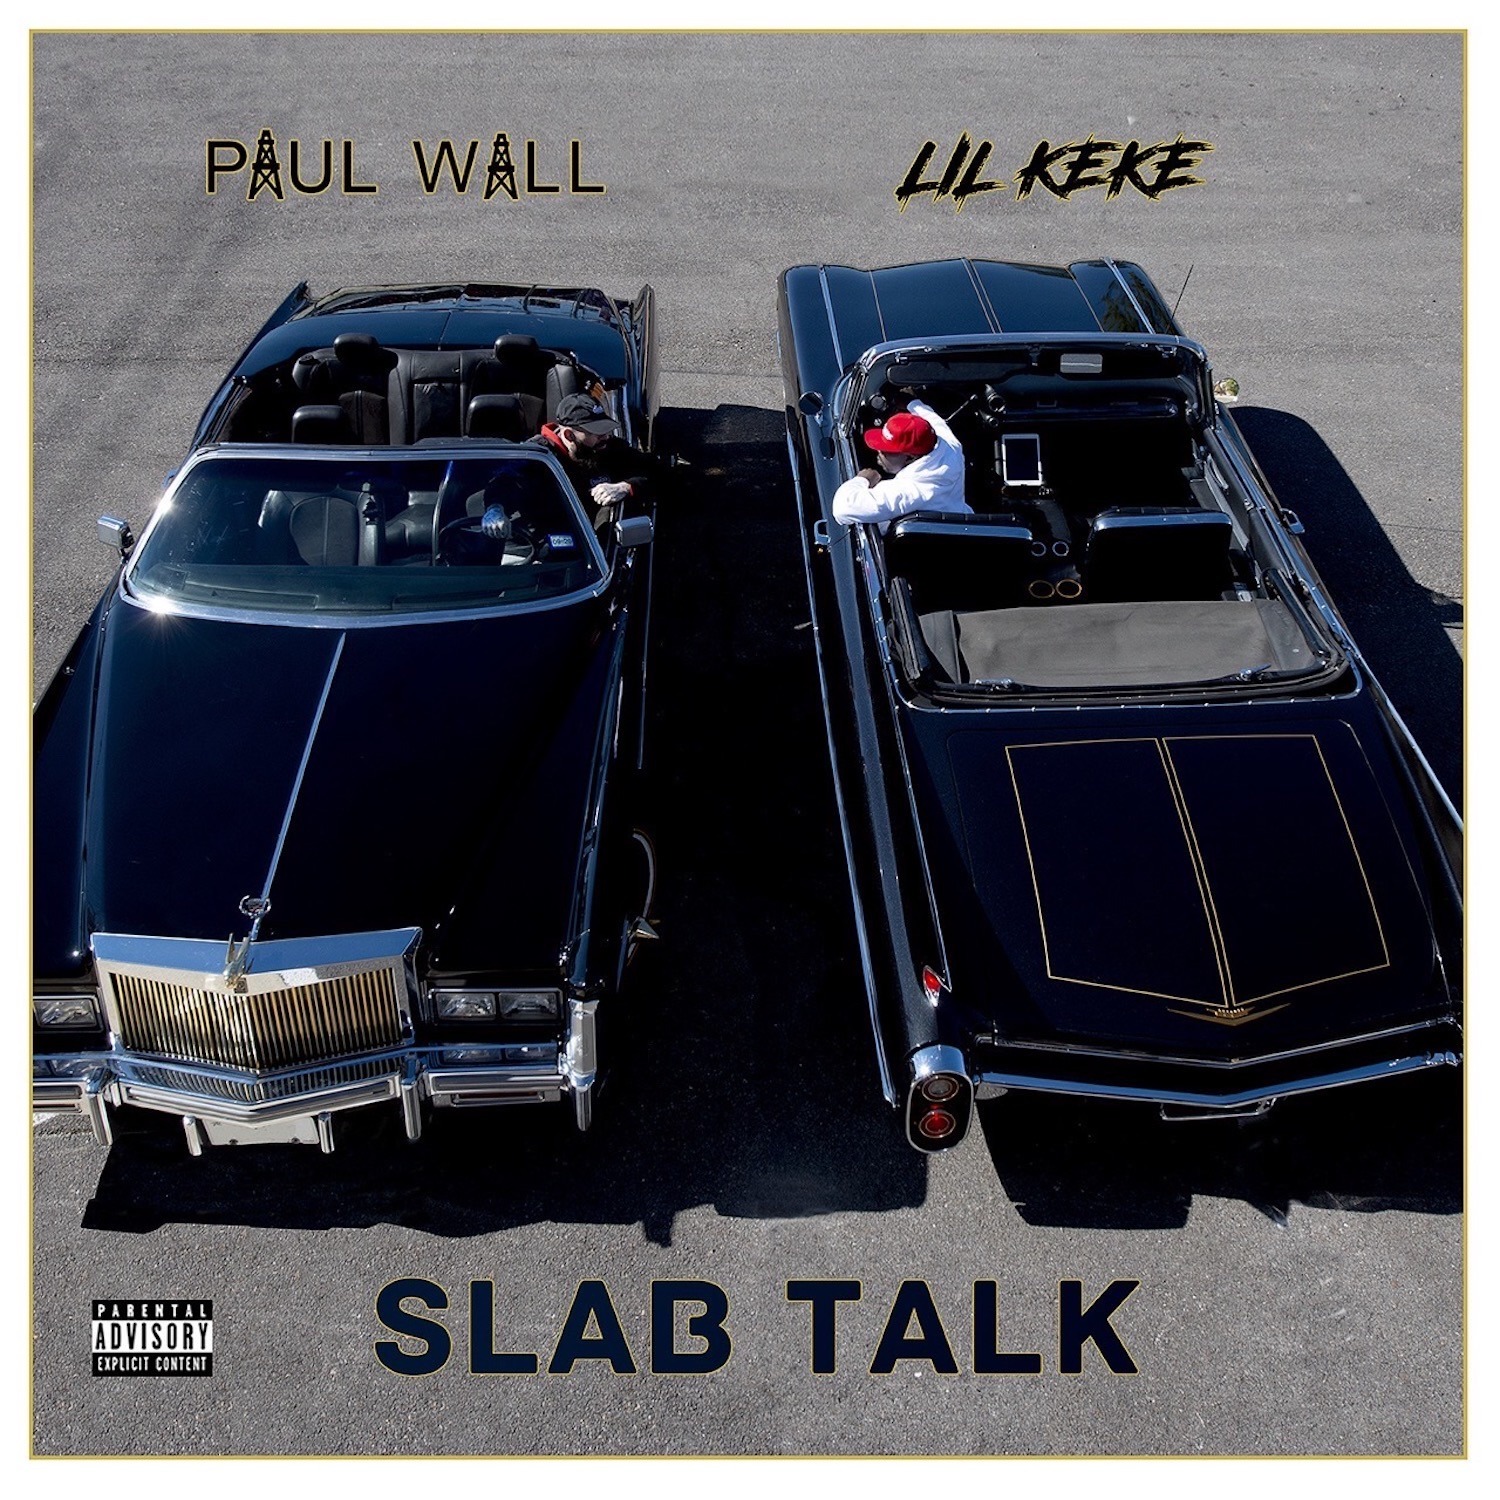 Paul Wall Teams With Lil Keke For 'Slab Talk' Album Stream